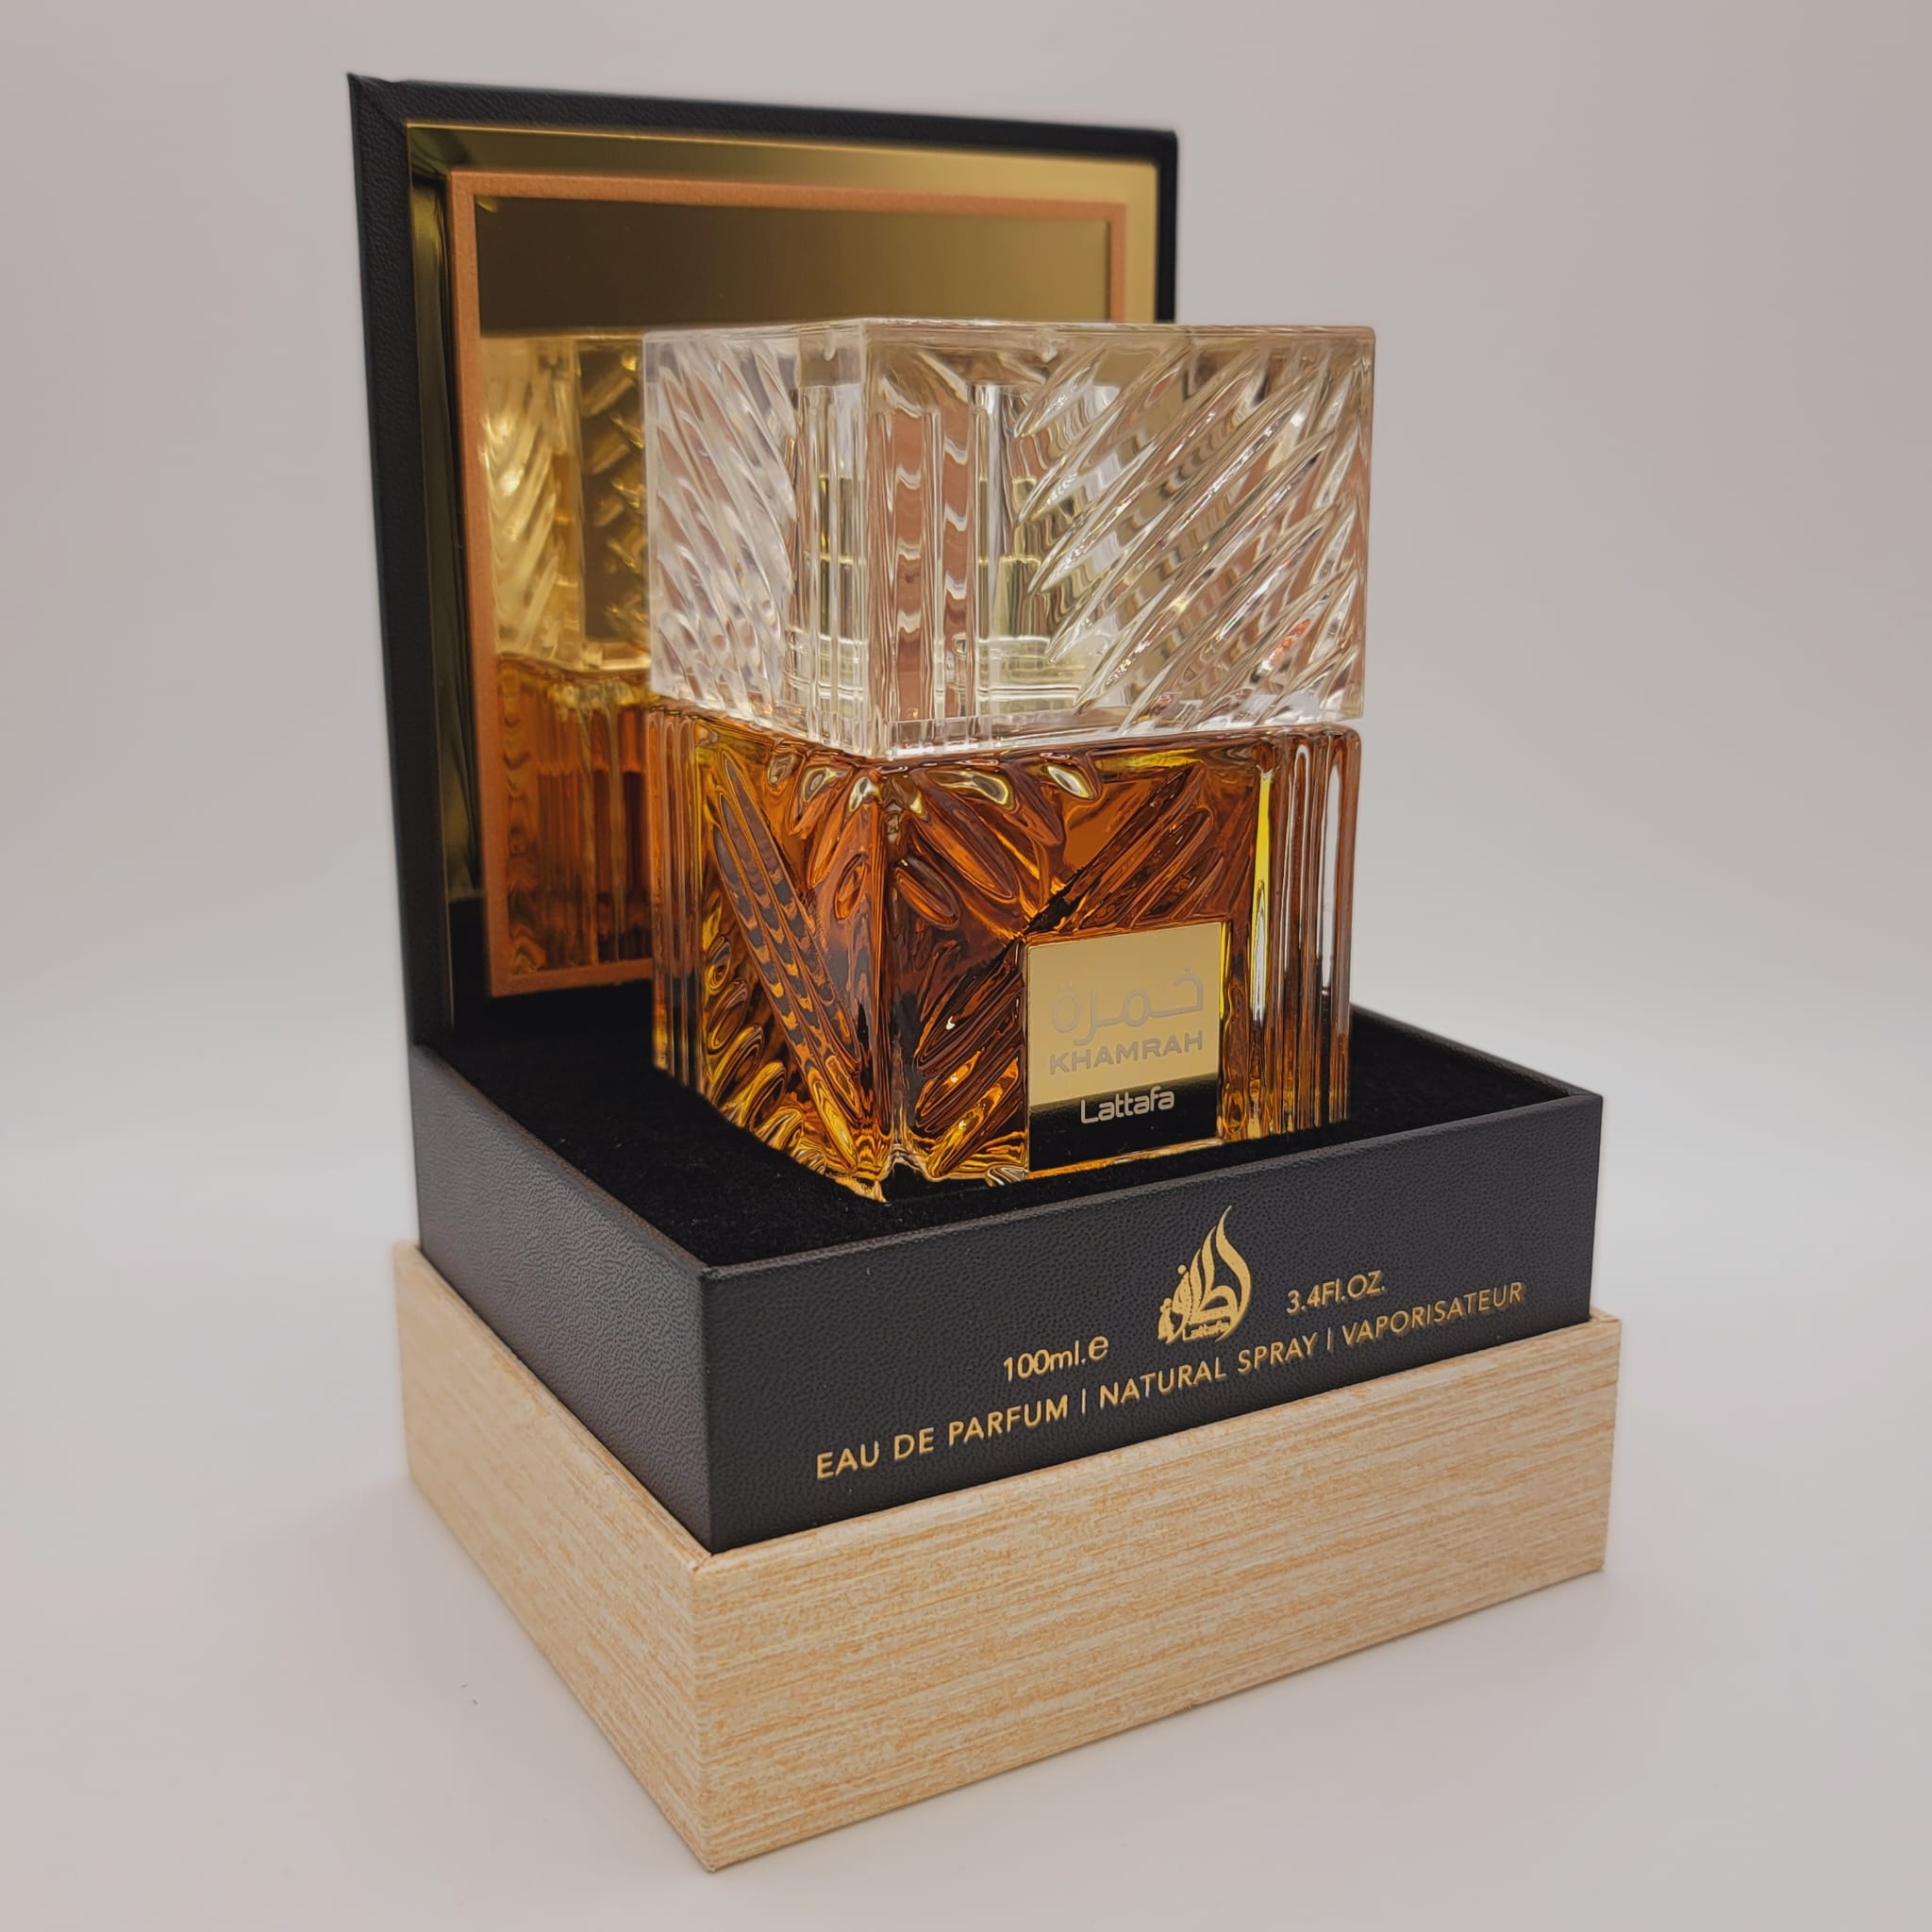 Khamrah By Lattafa Eau De Parfum – Unisex Fragrance 3.4 Oz (2022 Release)